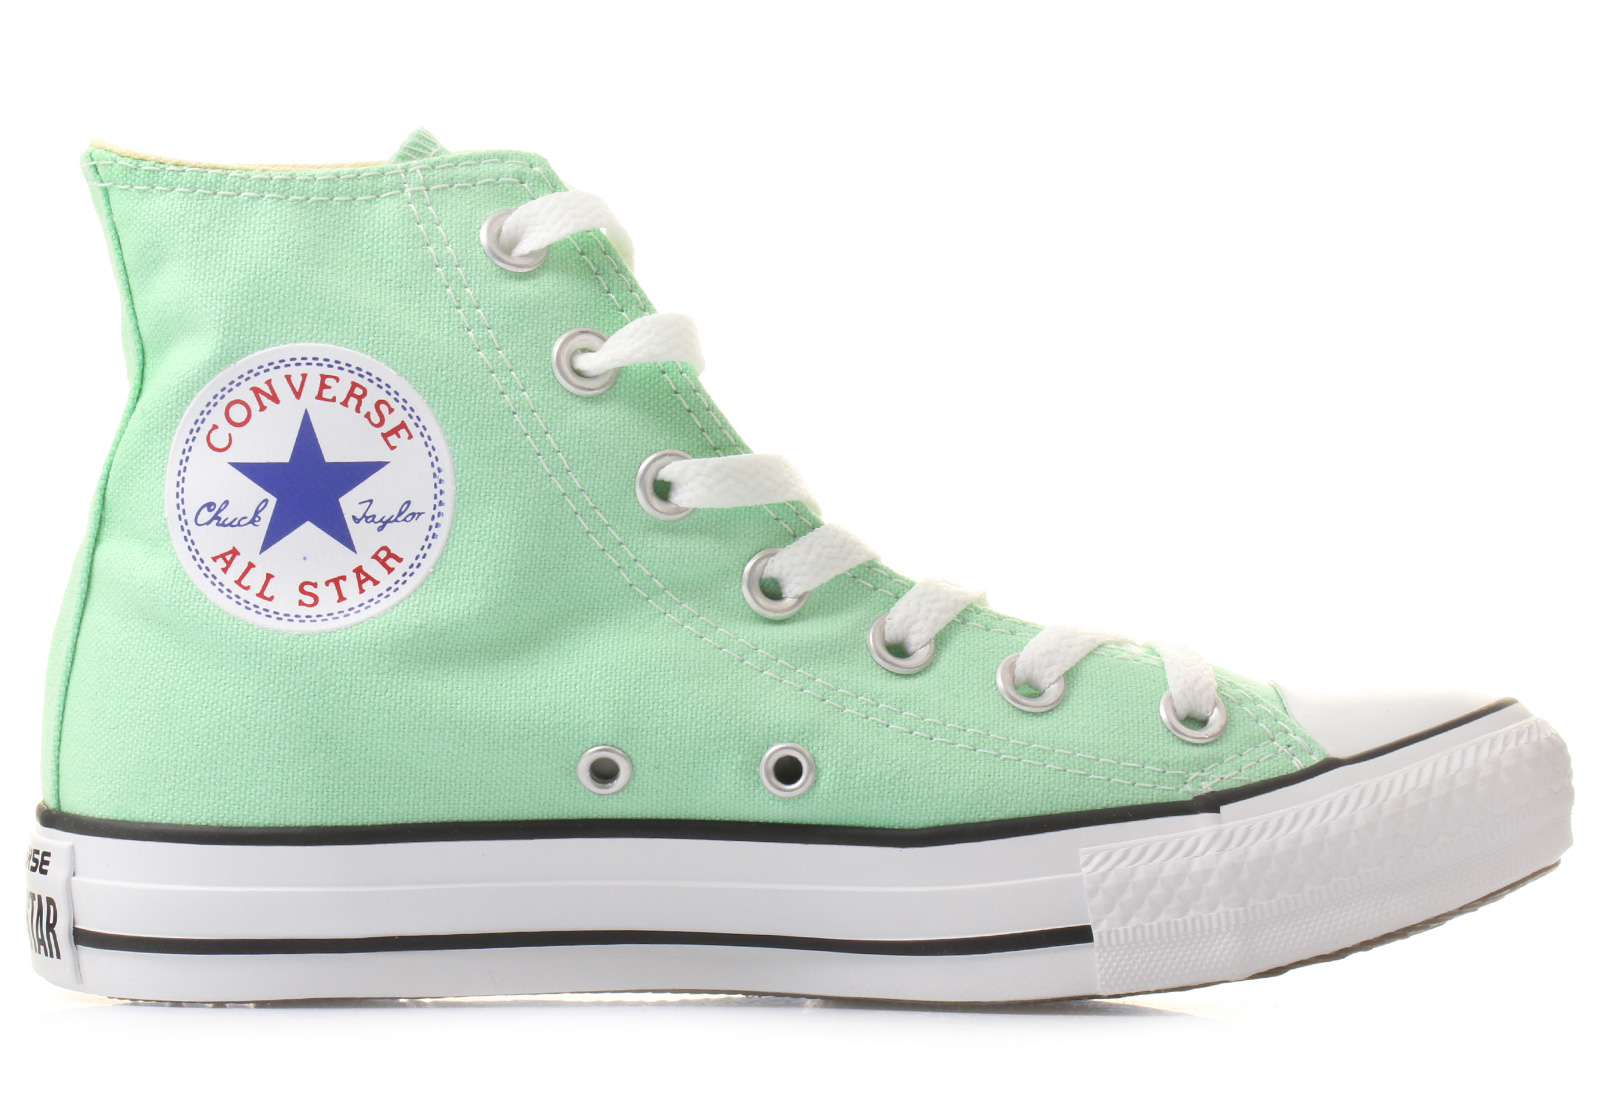 Converse Sneakers - Chuck Taylor All Star Seasonal Hi - 142367C ...